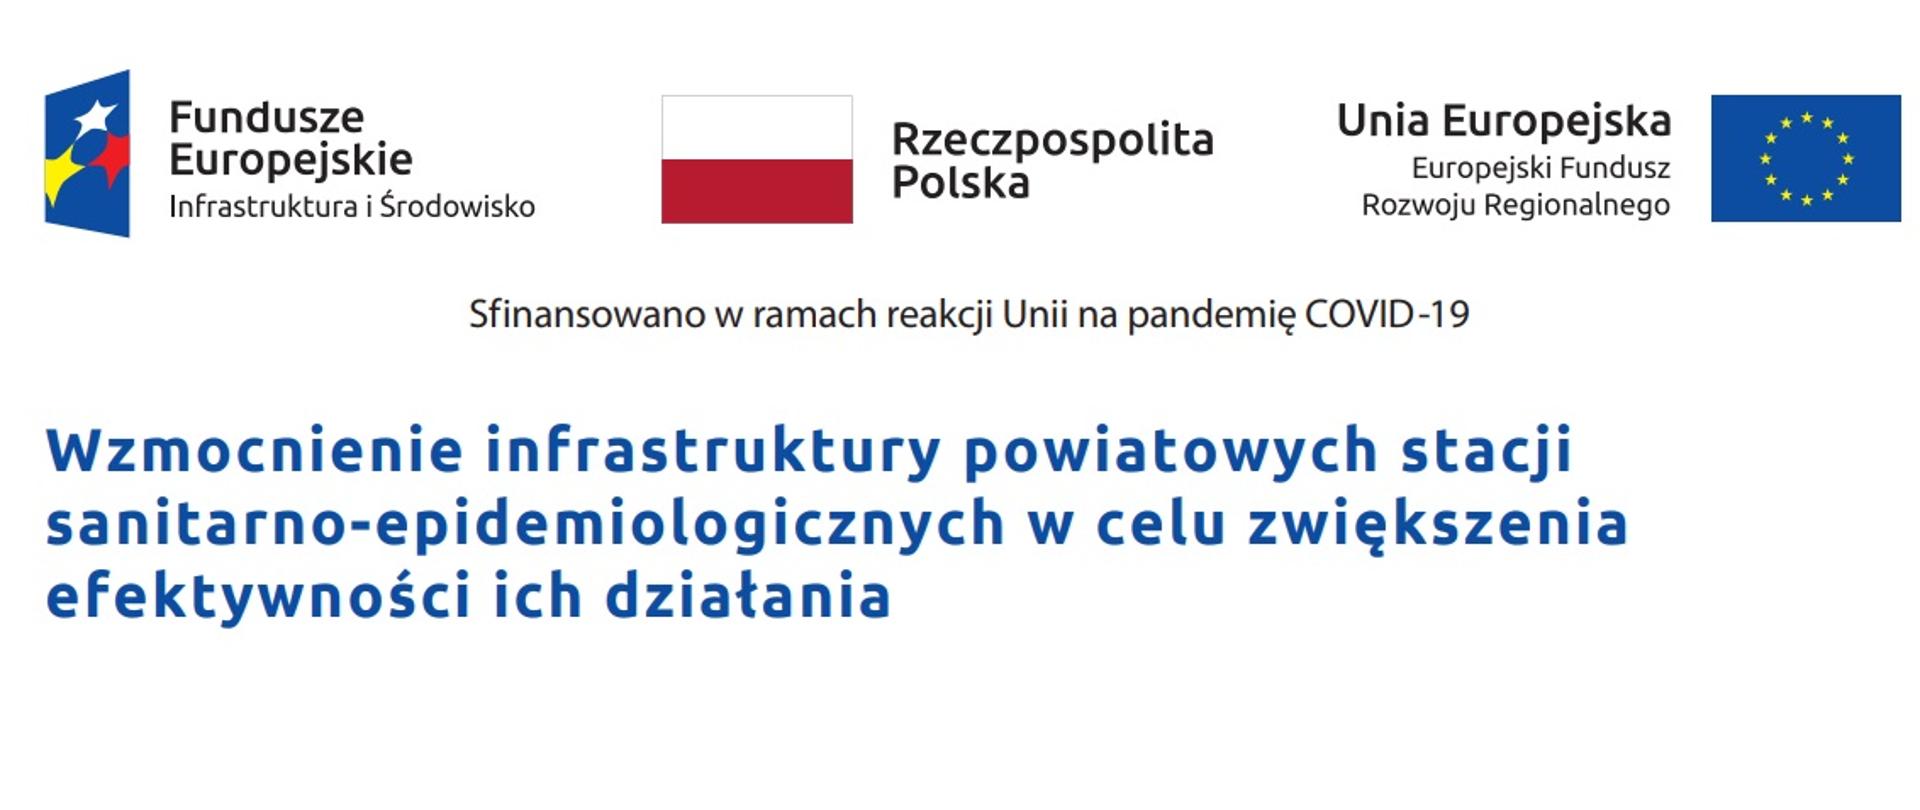 Grafika przedstawia tekst "Sfinansowano w ramach reakcji Unii na pandemię COVID-19. Wzmocnienie infrastruktury powiatowych stacji sanitarno-epidemiologicznych w celu zwiększenia efektywności ich działania". Grafika jest w kolorze białym, na górze znajduje się logo Fundusze Europejskie Infrastruktura i Środowisko, flaga Rzeczpospolitej Polski oraz flaga Uni Europejskiej Europejski Fundusz Rozwoju Regionalnego